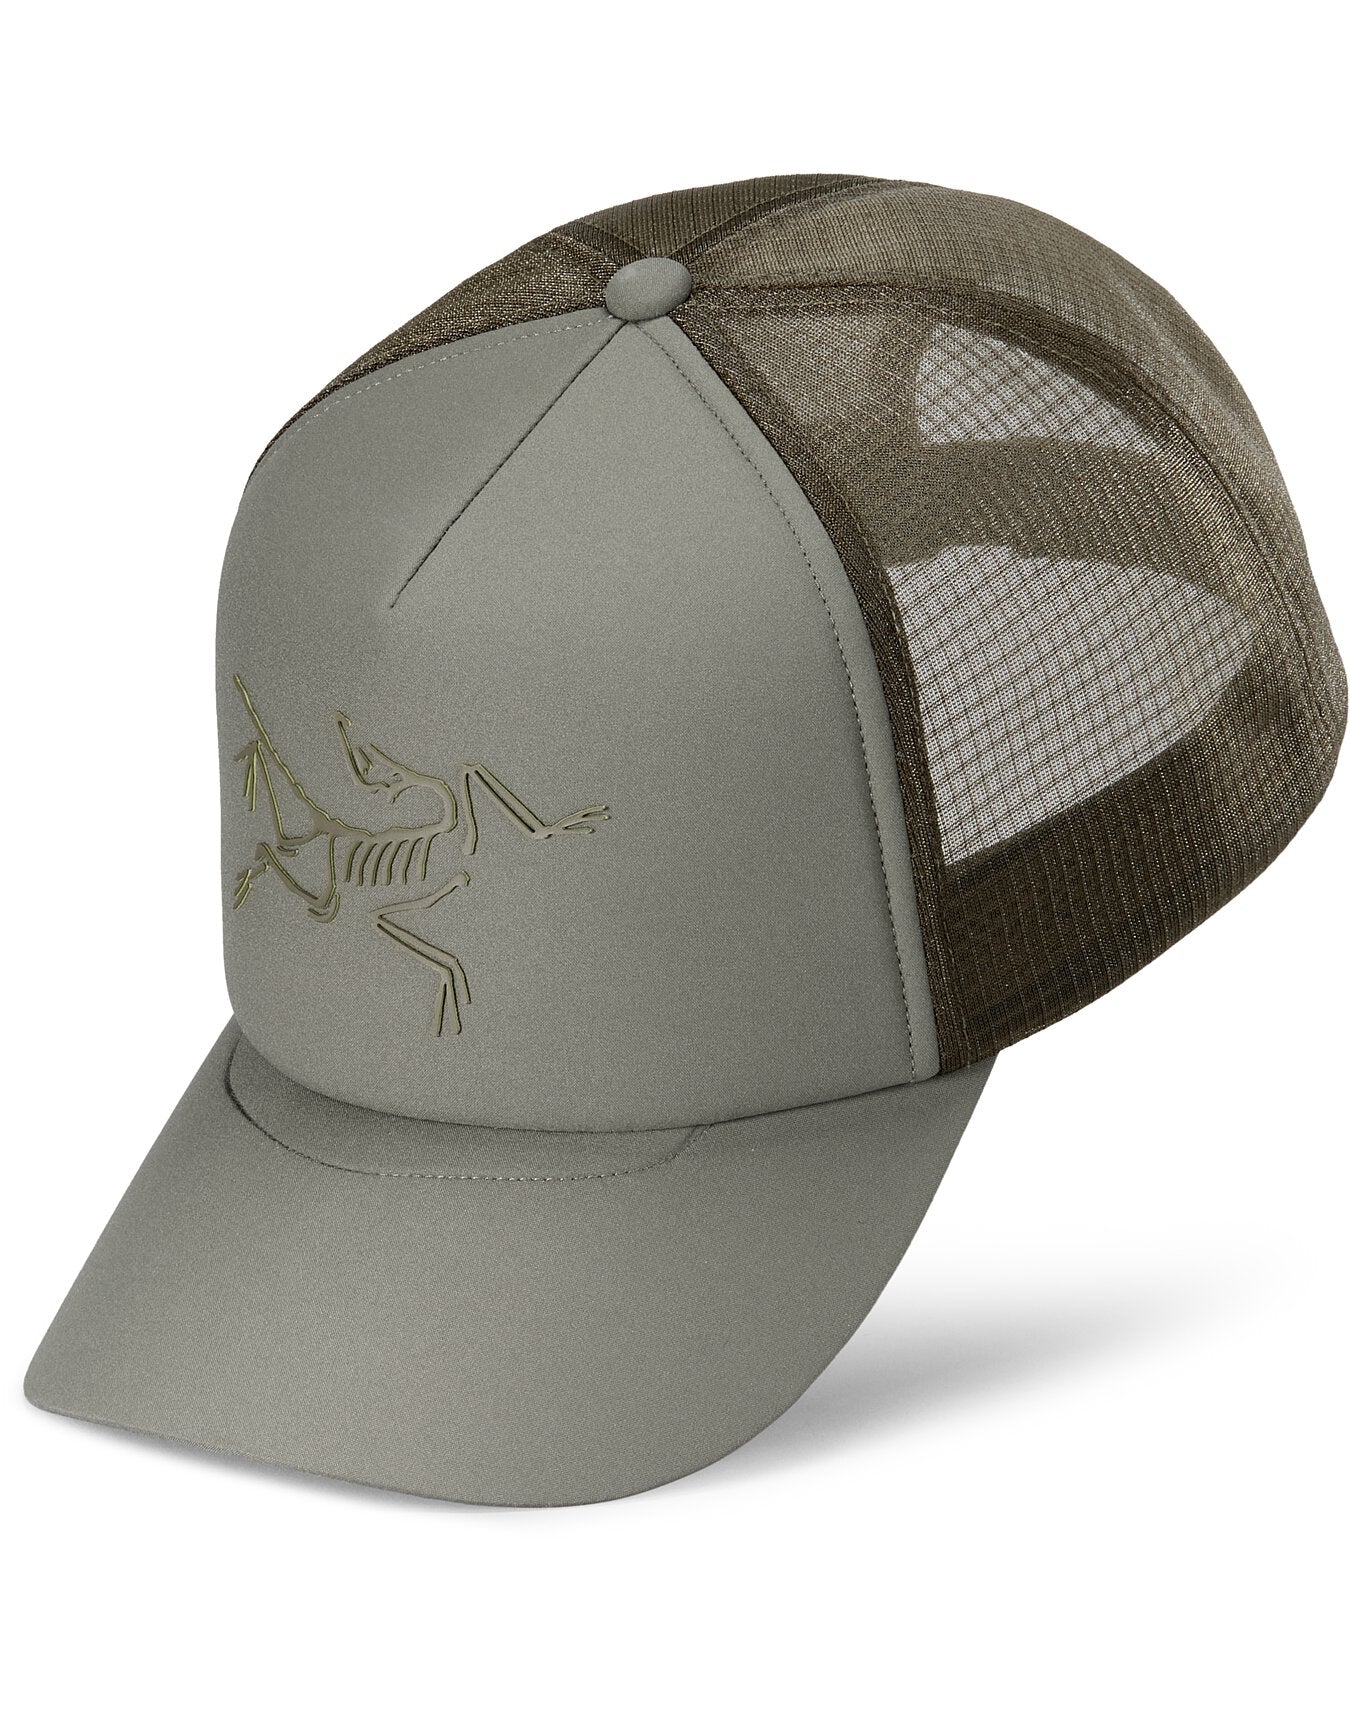 Arc'teryx Bird Curved Brim Trucker Hat